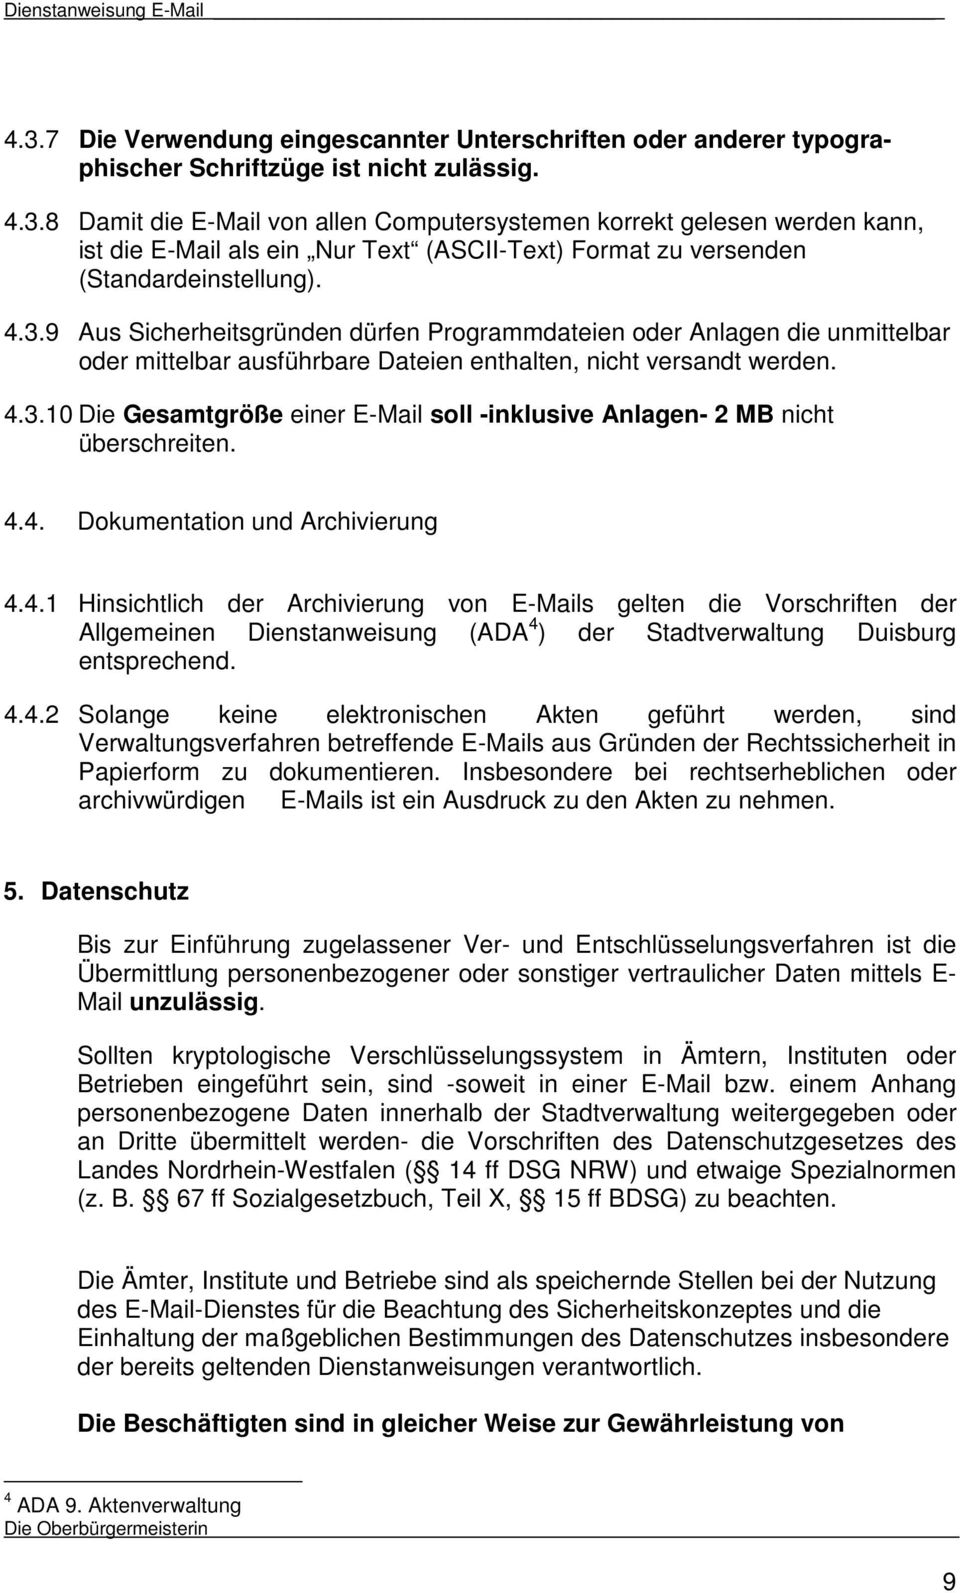 4.4. Dokumentation und Archivierung 4.4.1 Hinsichtlich der Archivierung von E-Mails gelten die Vorschriften der Allgemeinen Dienstanweisung (ADA 4 ) der Stadtverwaltung Duisburg entsprechend. 4.4.2 Solange keine elektronischen Akten geführt werden, sind Verwaltungsverfahren betreffende E-Mails aus Gründen der Rechtssicherheit in Papierform zu dokumentieren.